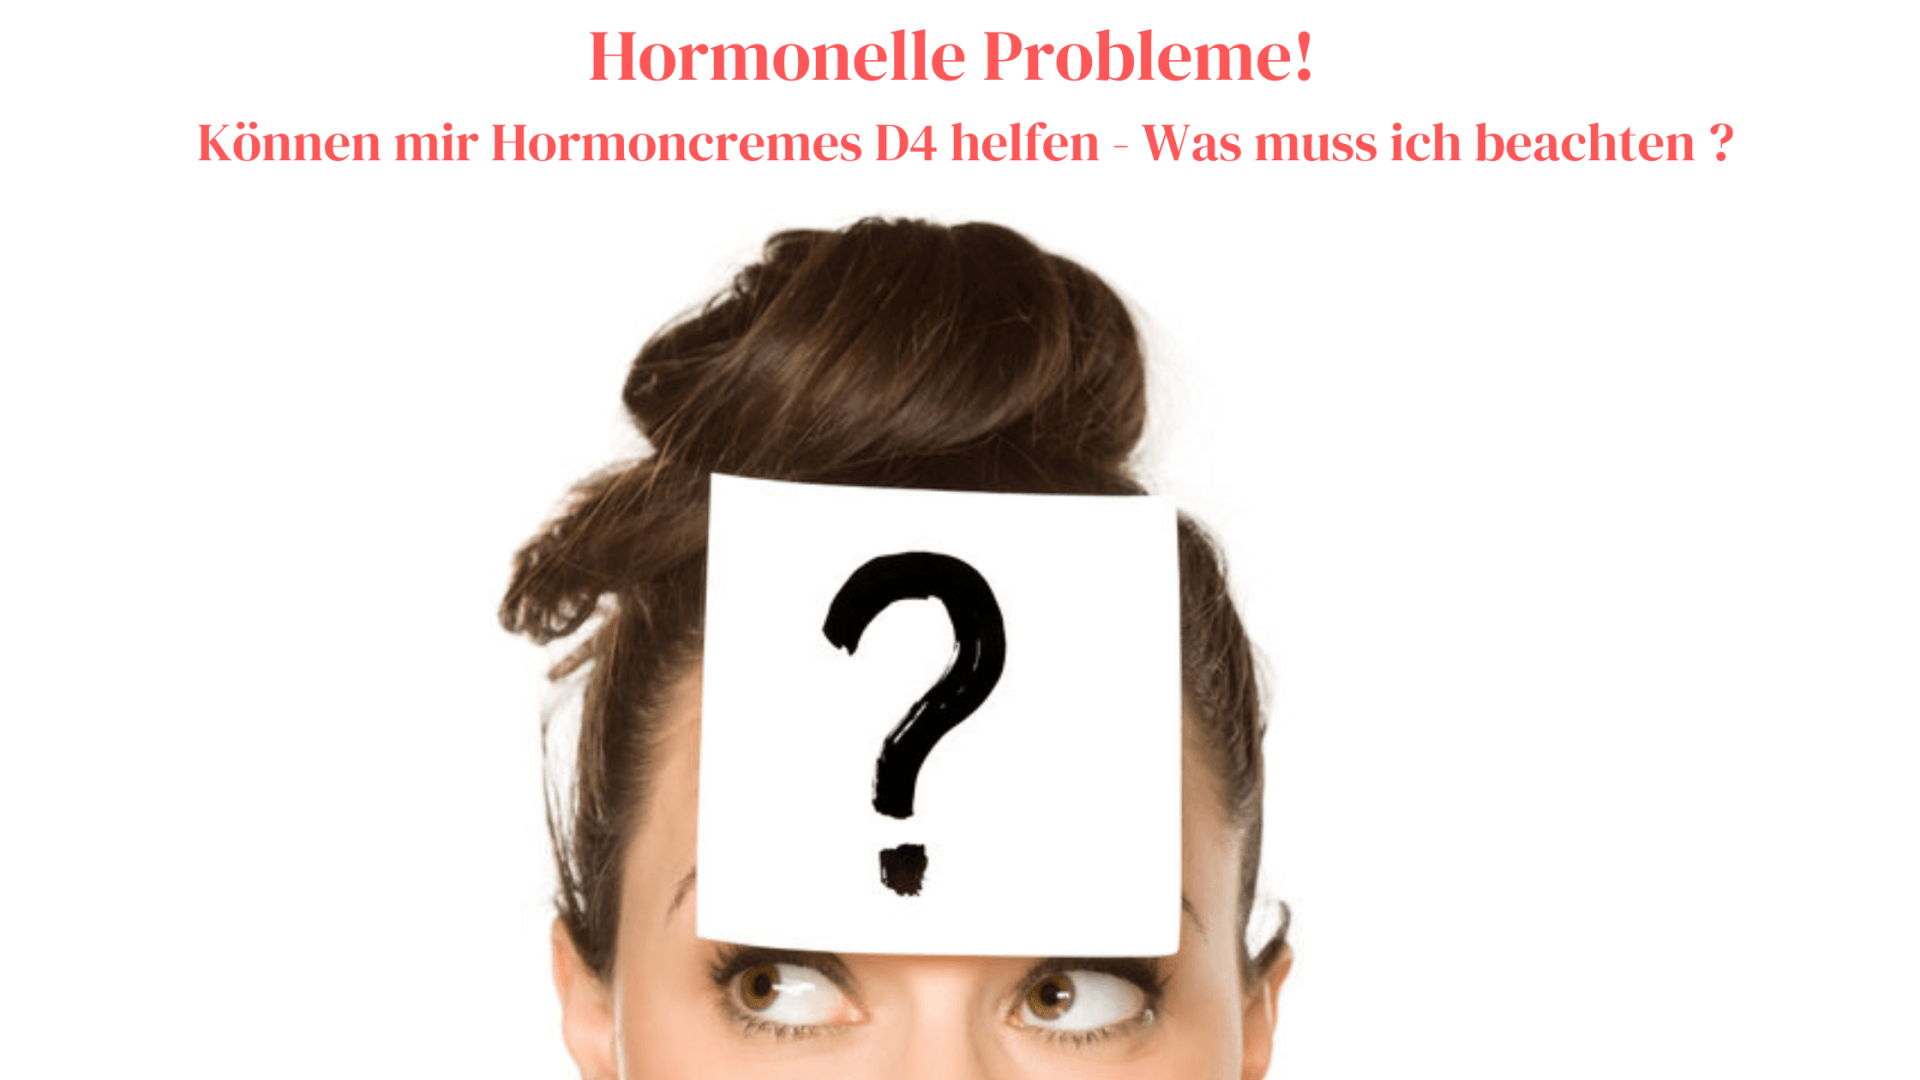 Helfen Hormoncremes D4 bei hormonellen Problemen ? Was ist bei der Verwendung zu beachten ?